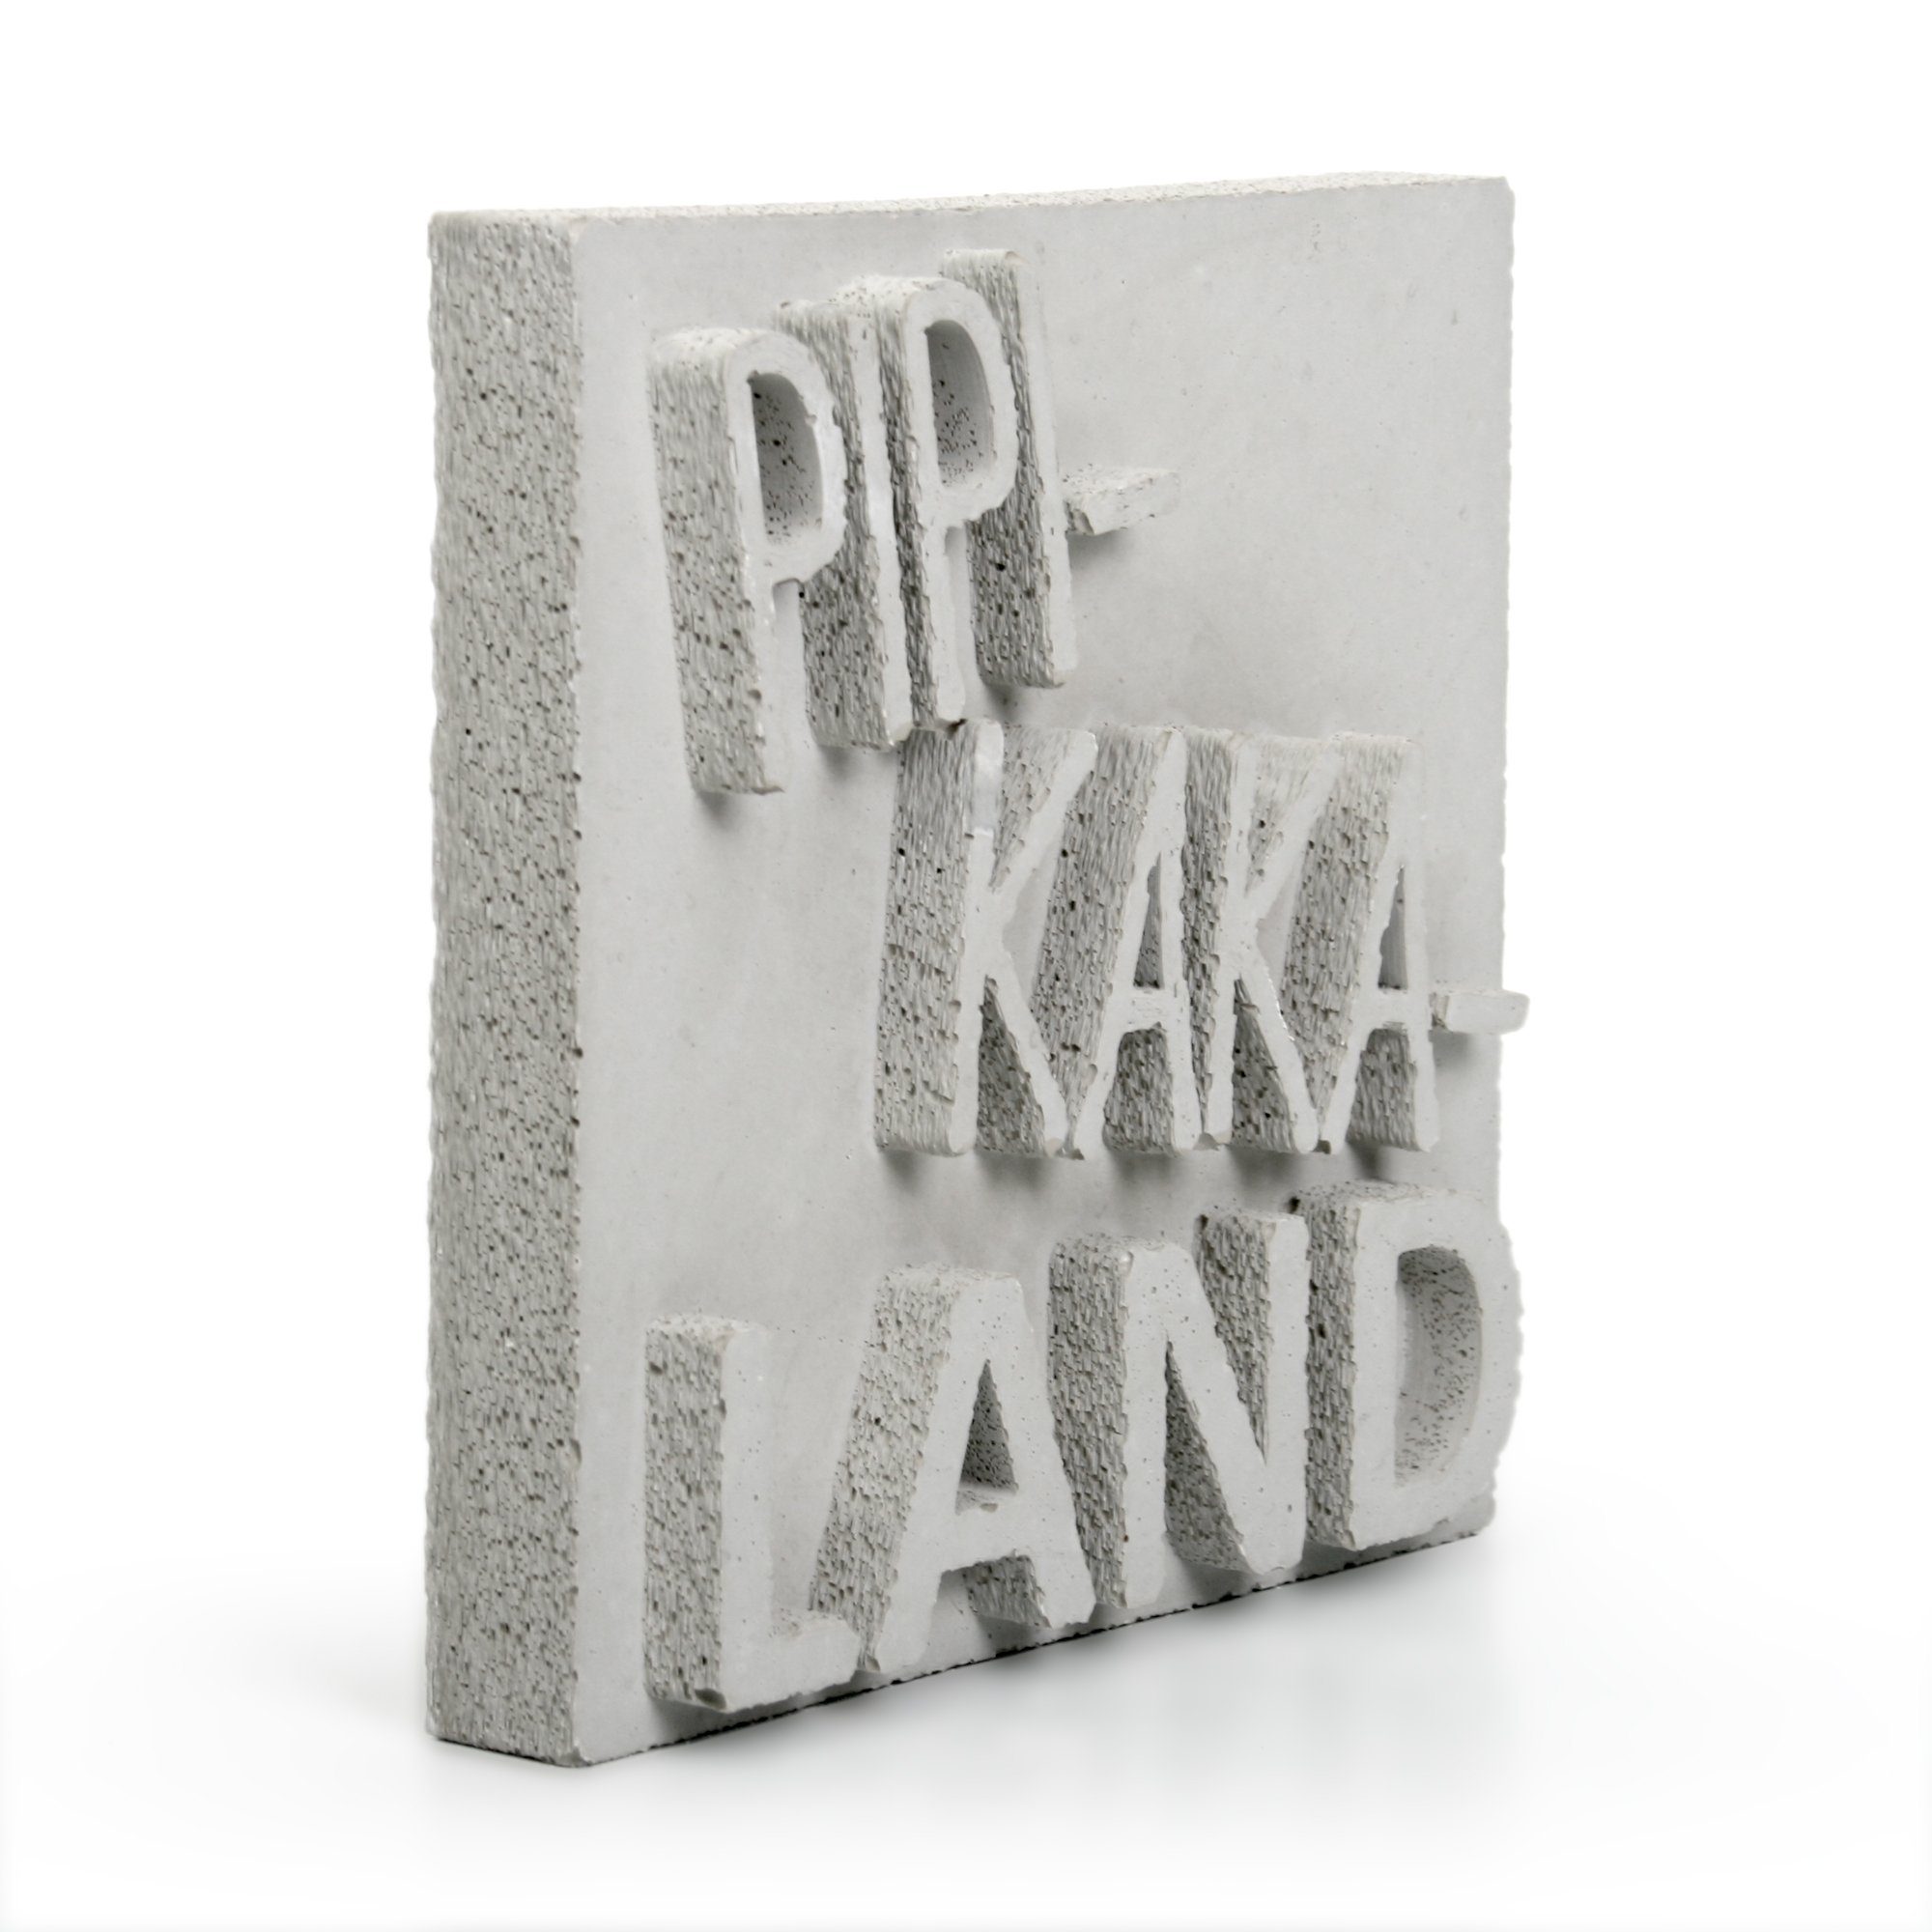 Kreative ein AUFSTELLER Beton, „PIPI-KAKA-LAND“ jedes Grau Dekorativer handgegossen Deko-Schriftzug aus Feder Einzelstück Unikat